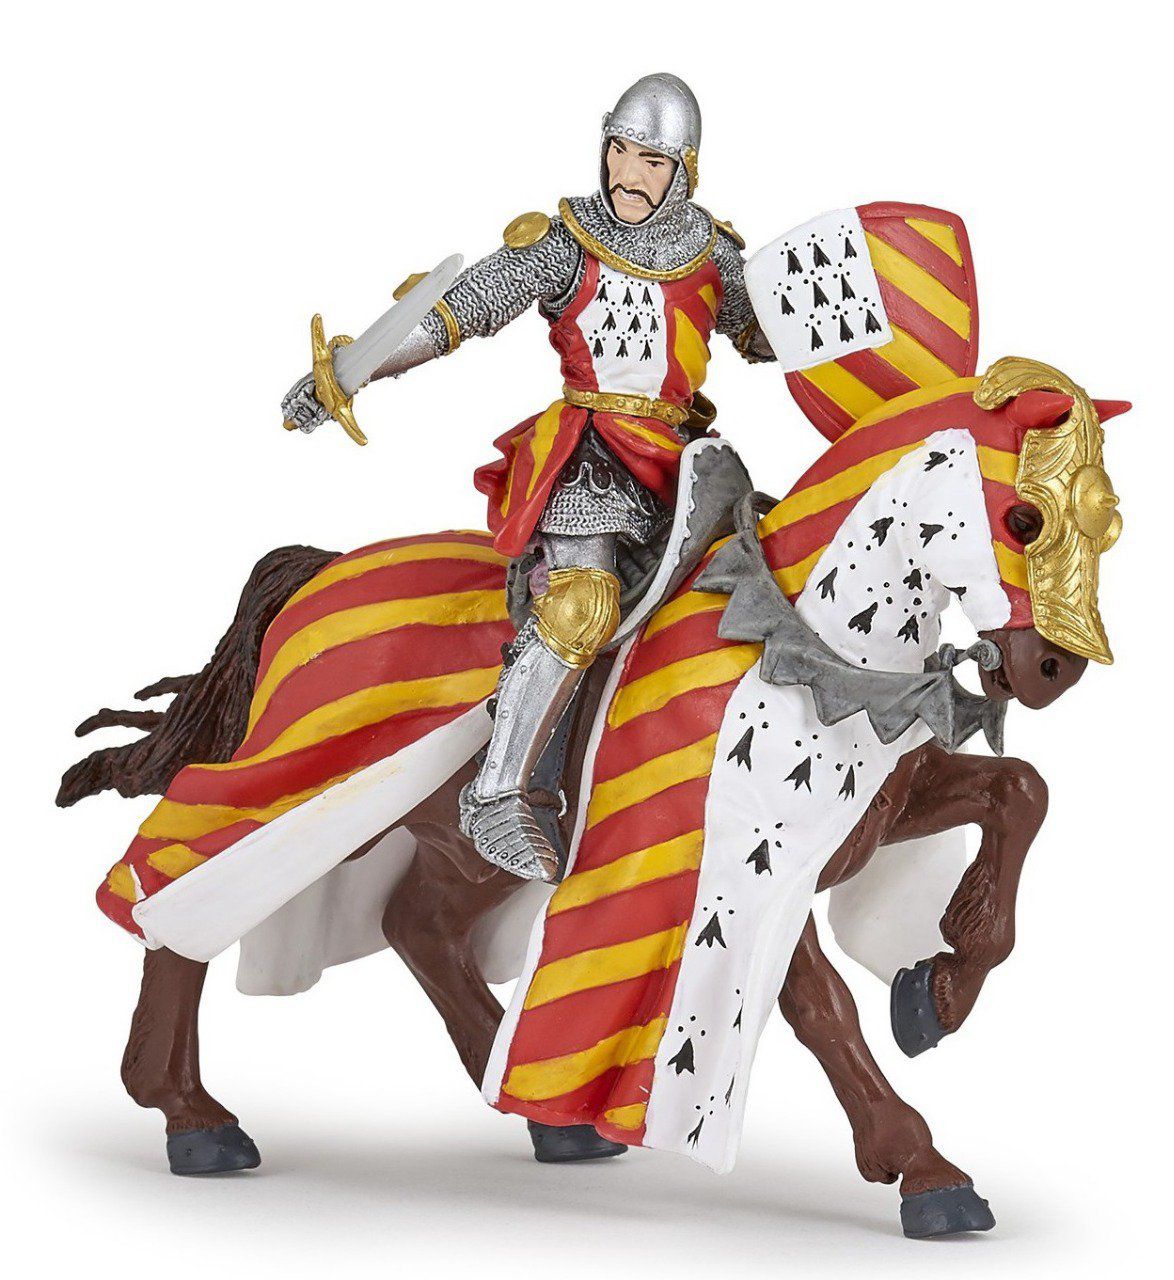 Chevalier au tournoi avec son cheval